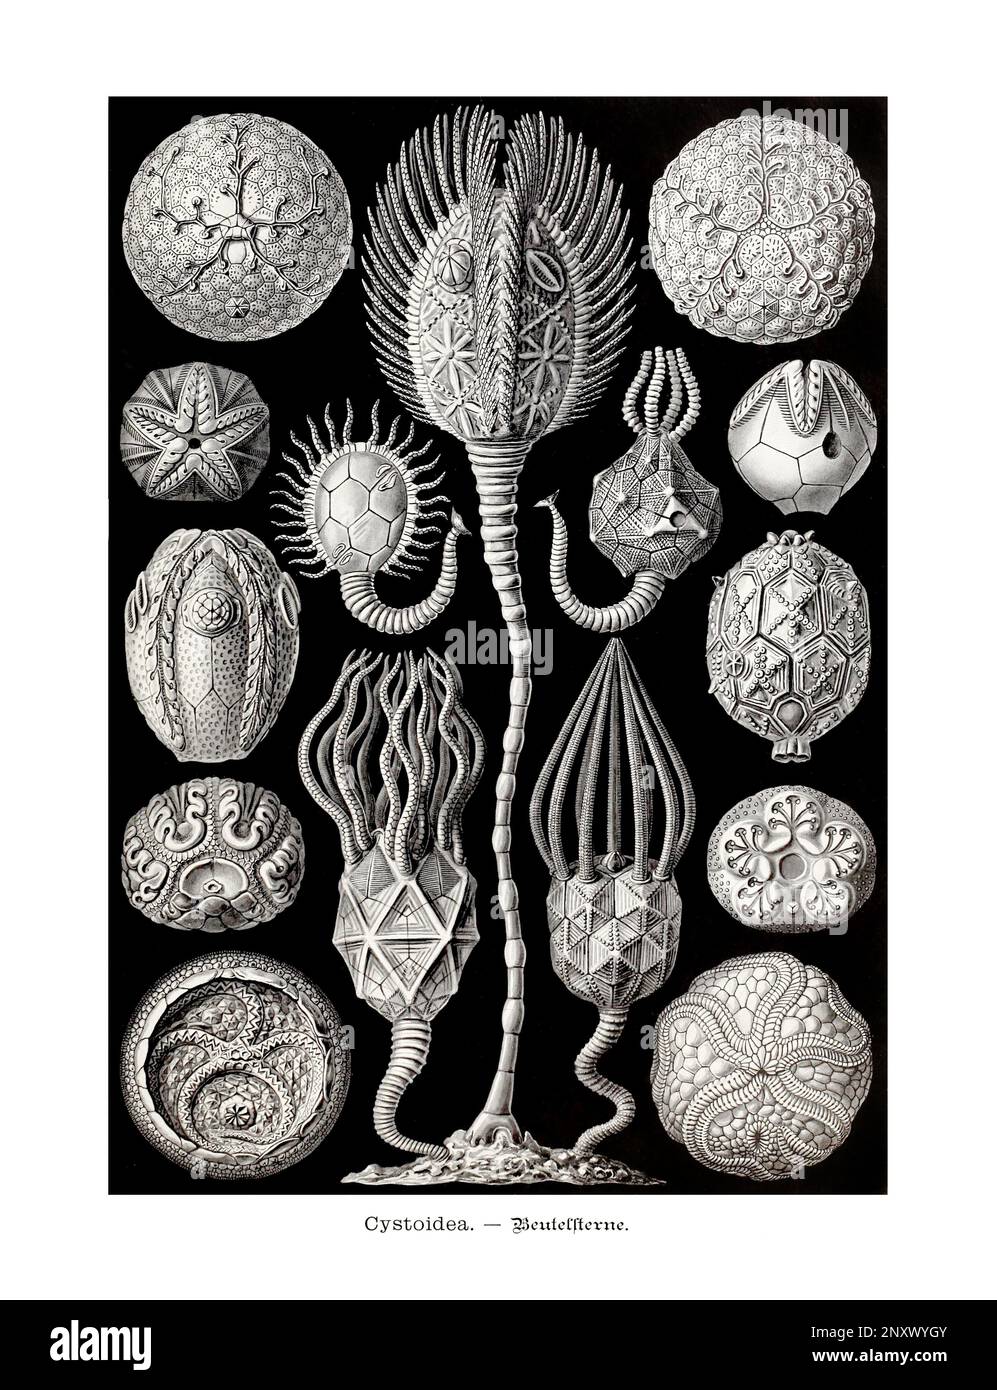 ERNST HAECKEL ARTE - Cystoidea, echinodermi crinozoiche - 19th ° secolo - Antique Zoological Illustration - illustrazioni del libro : “Art Forms in Natu Foto Stock